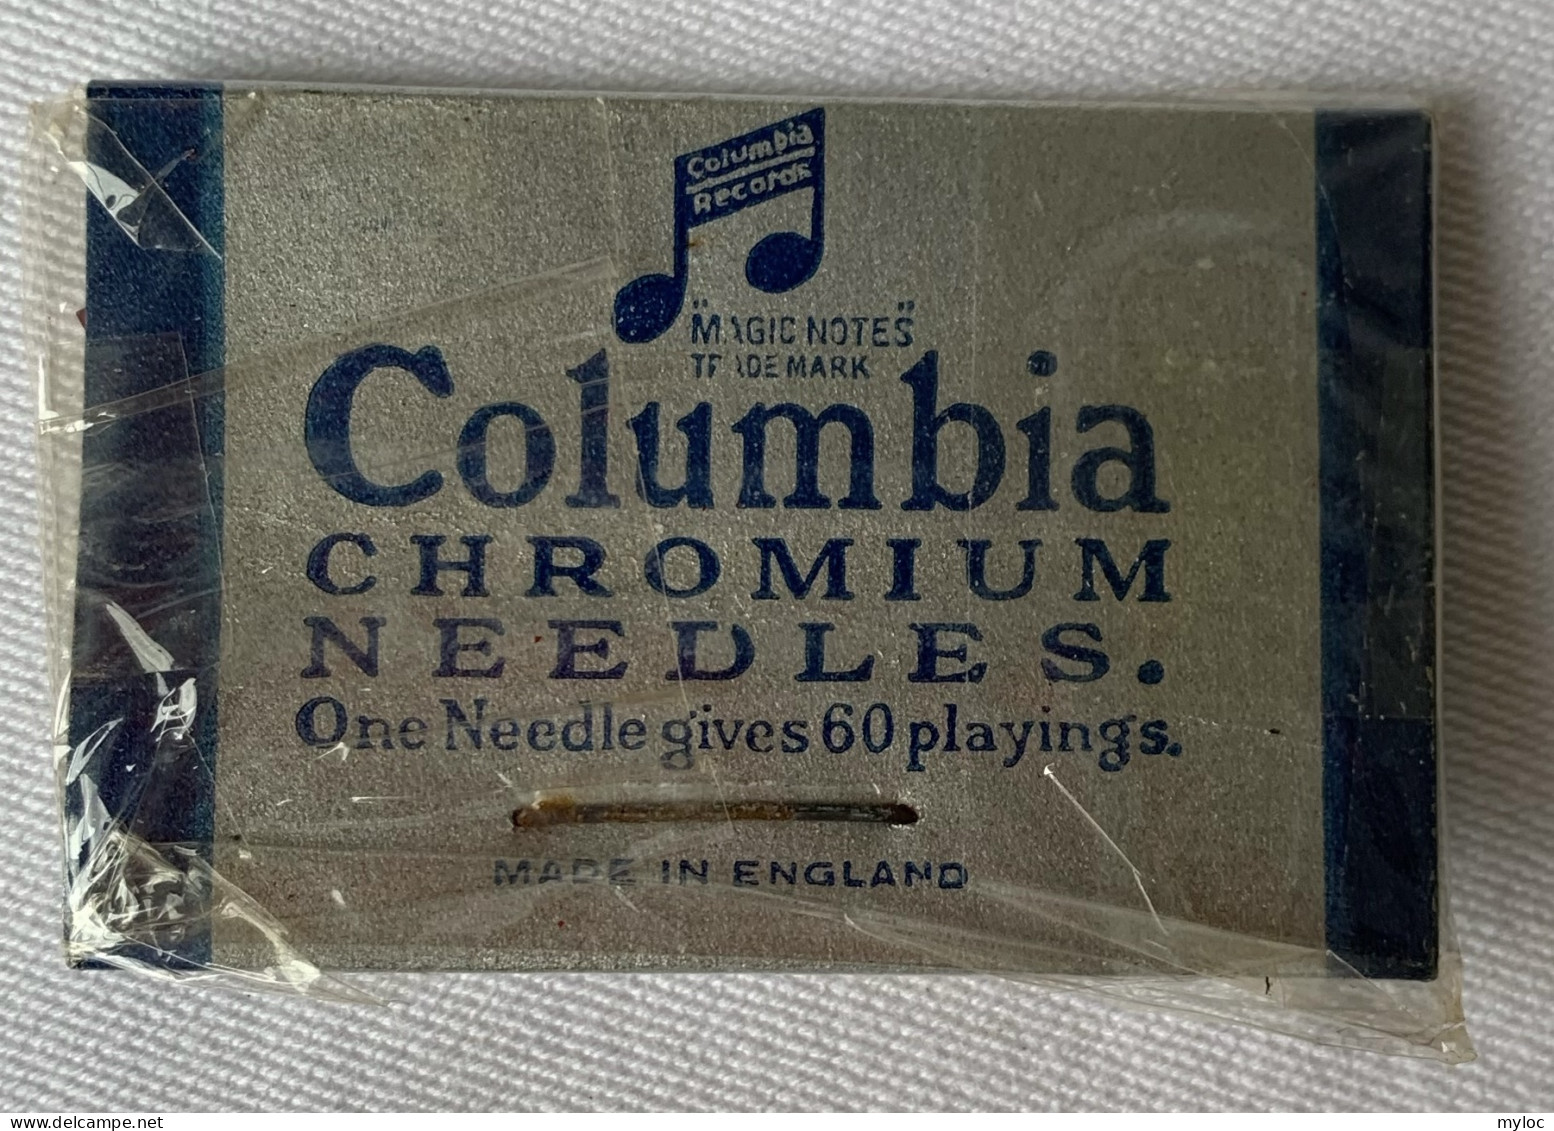 Columbia Chromium Needles. Paquet De 10 Pièces Sous Blister - Accessories & Sleeves